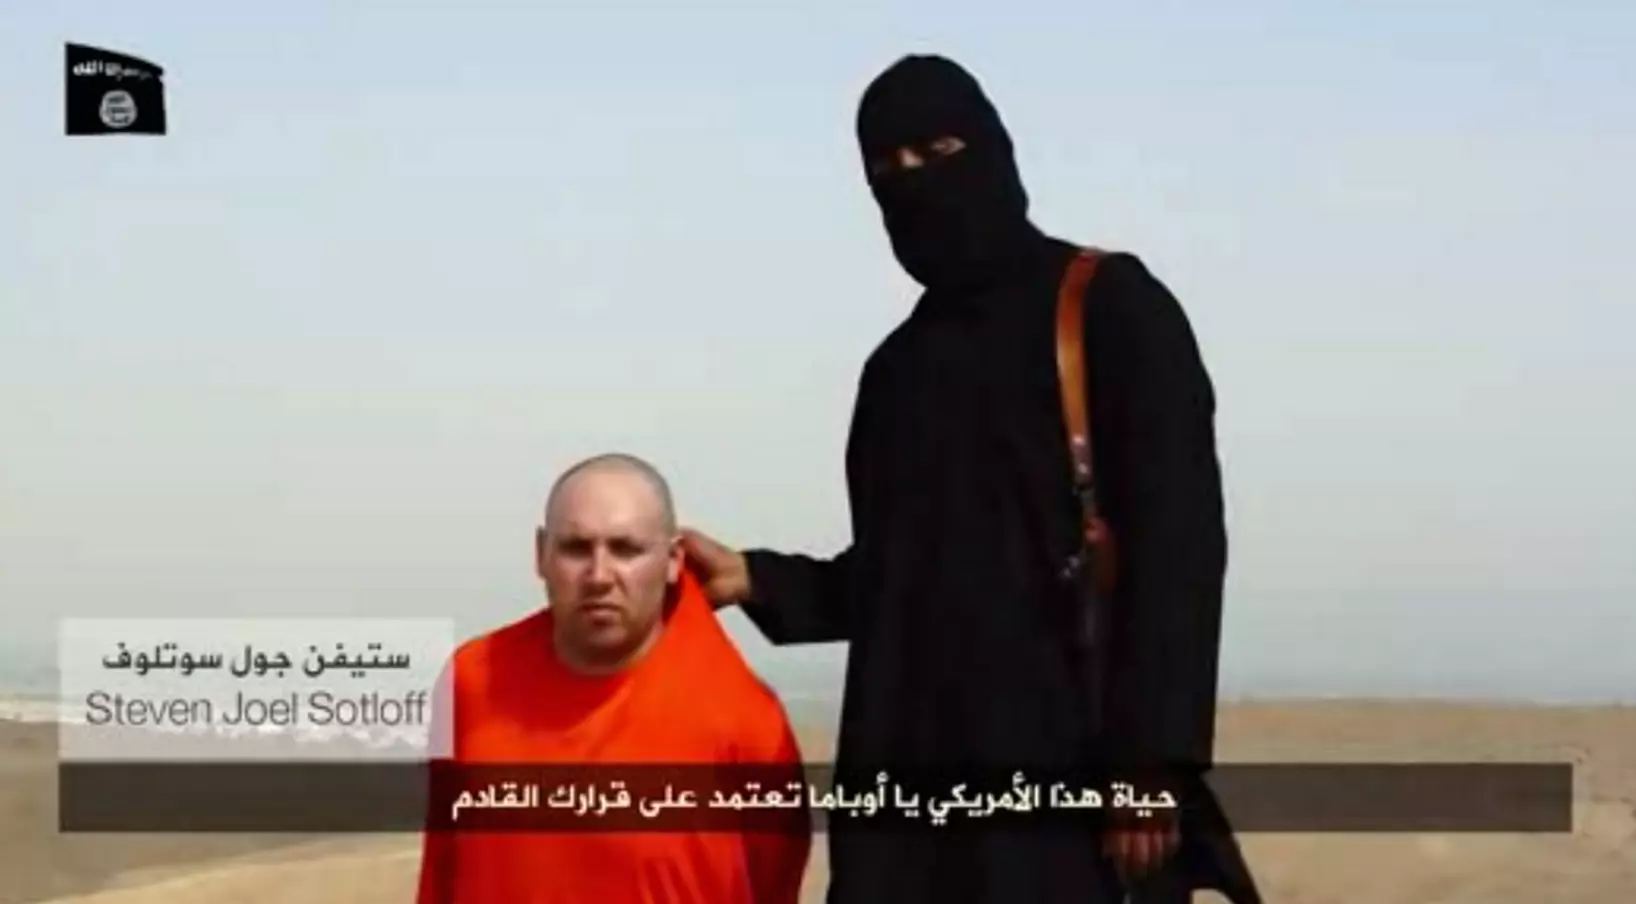 העיתונאי סטיבן ג'ואל סוטלוף בידי איש דאעש.